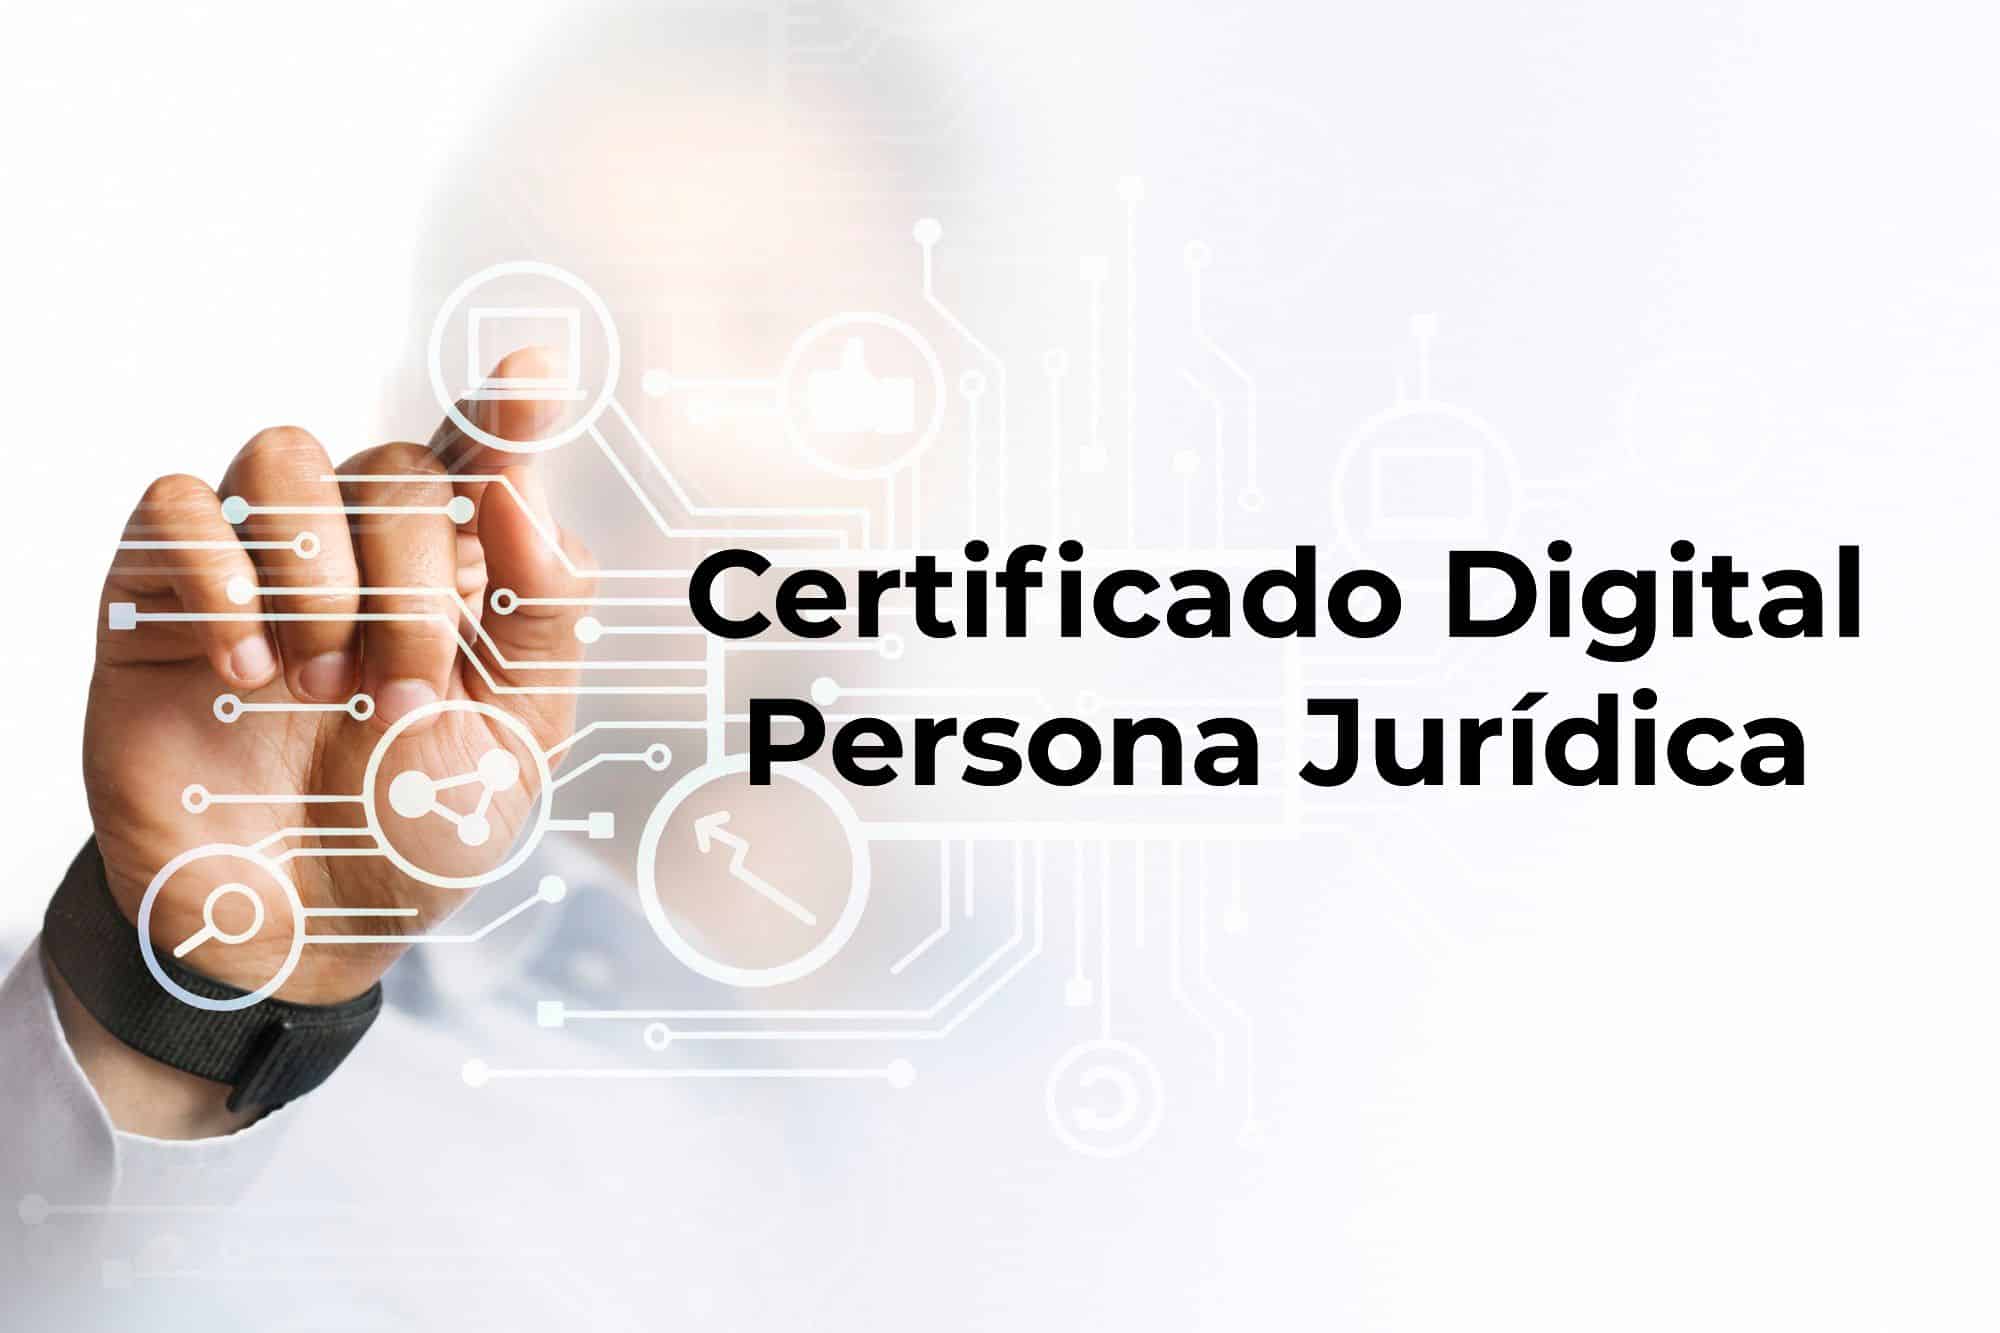 Uso del certificado digital por empresas o personas jurídicas